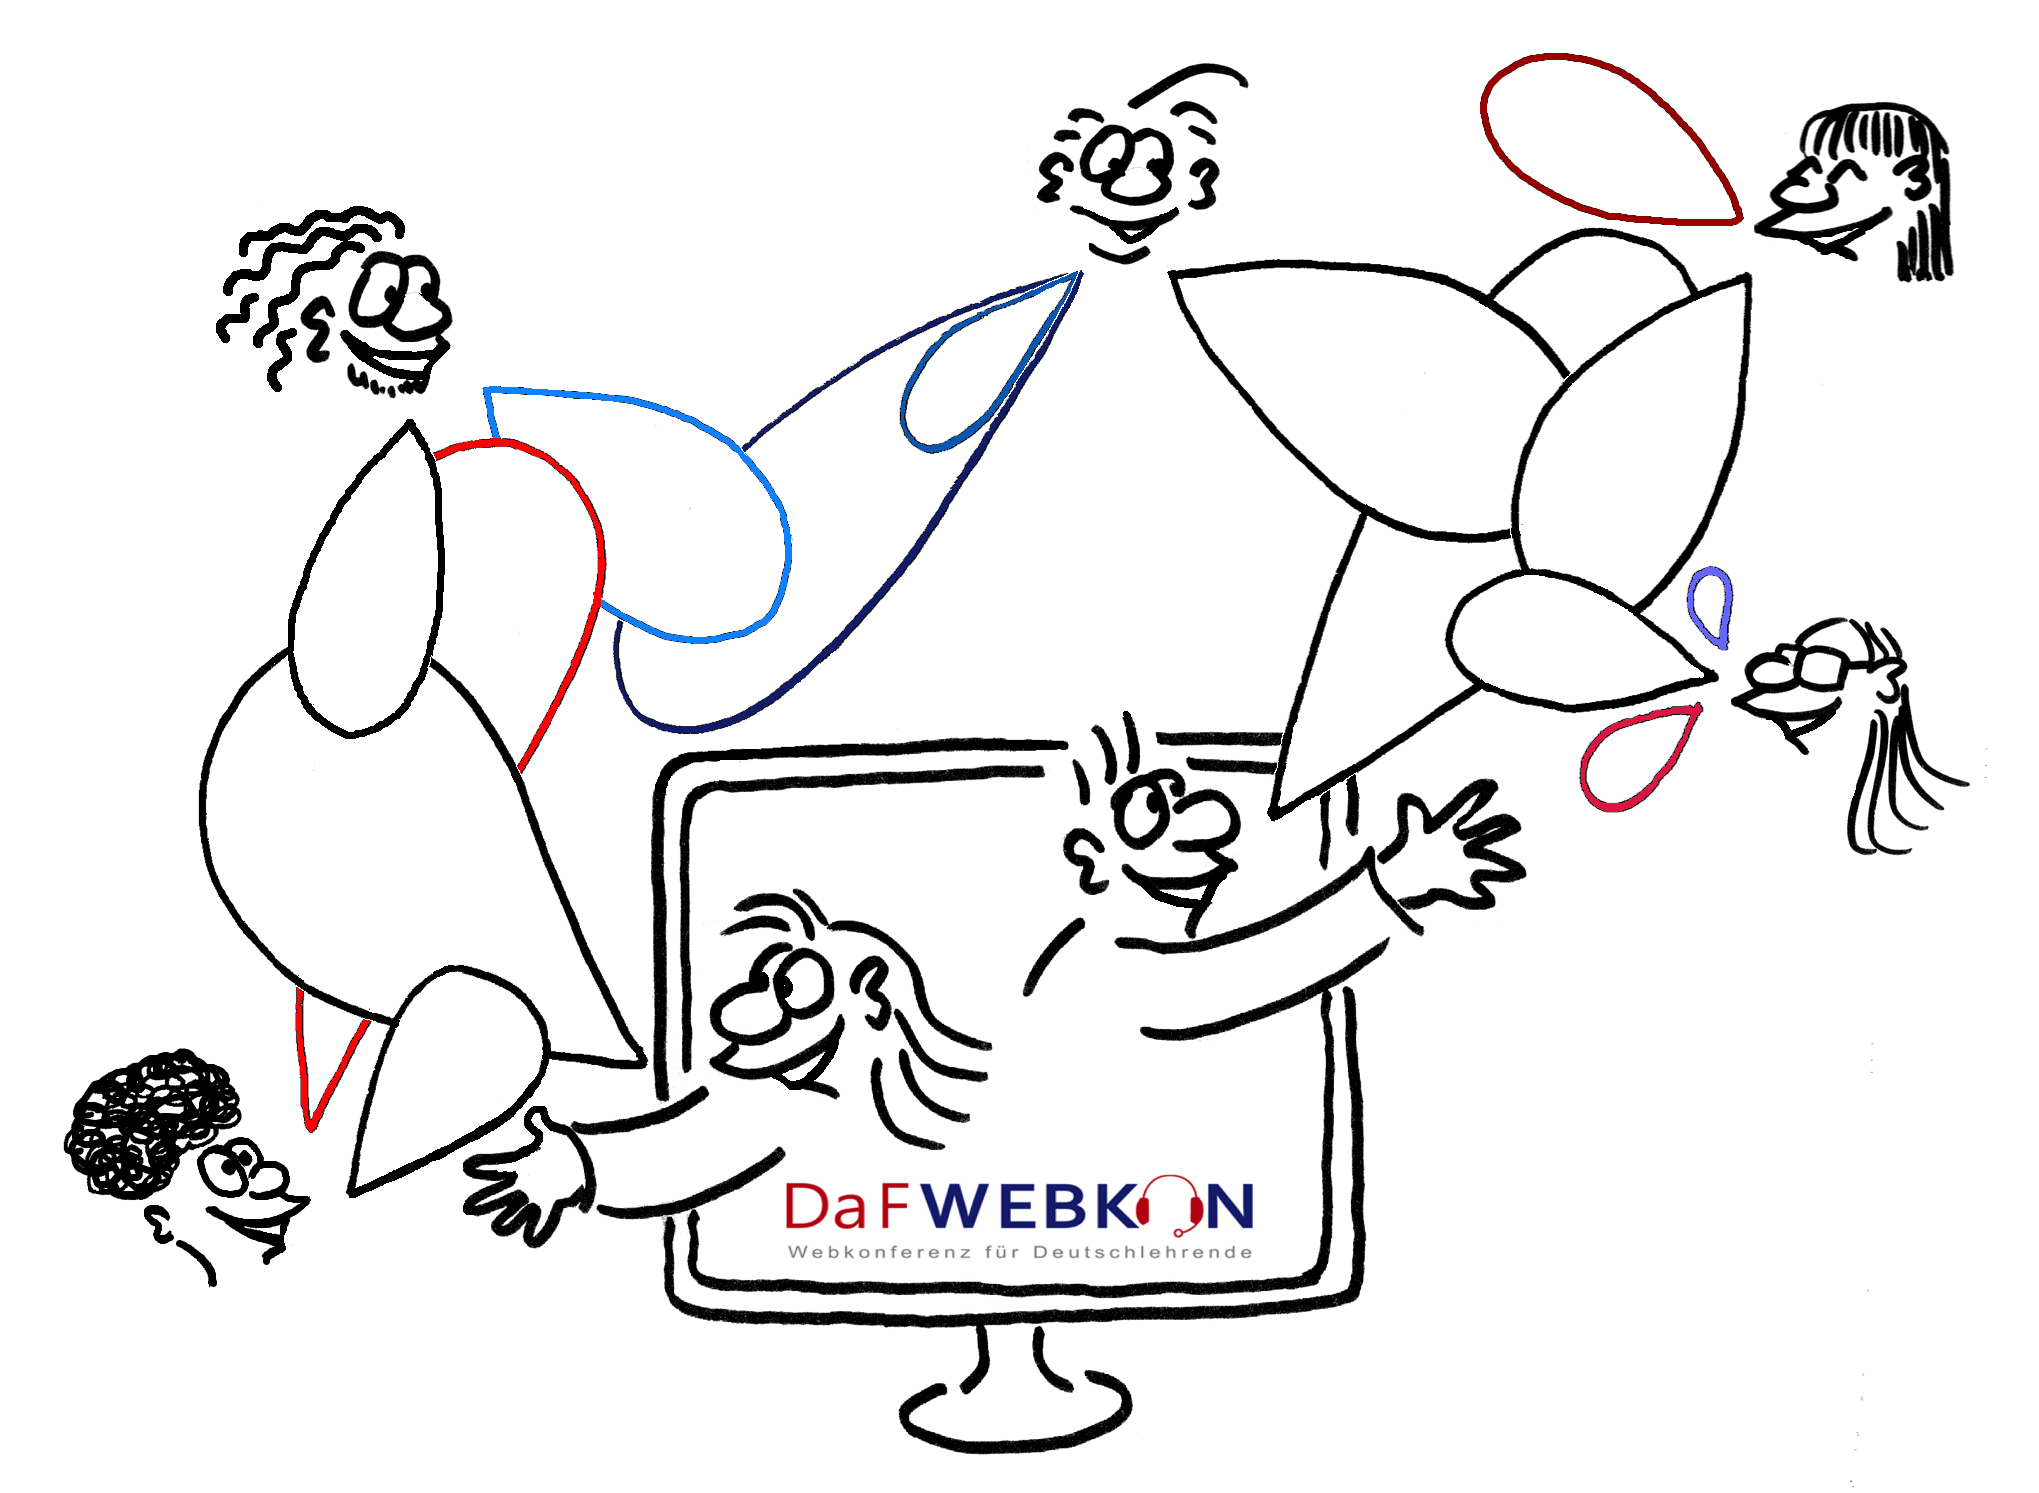 DaFWEBKON Logo 2020 by Cartoonsbyroth.com